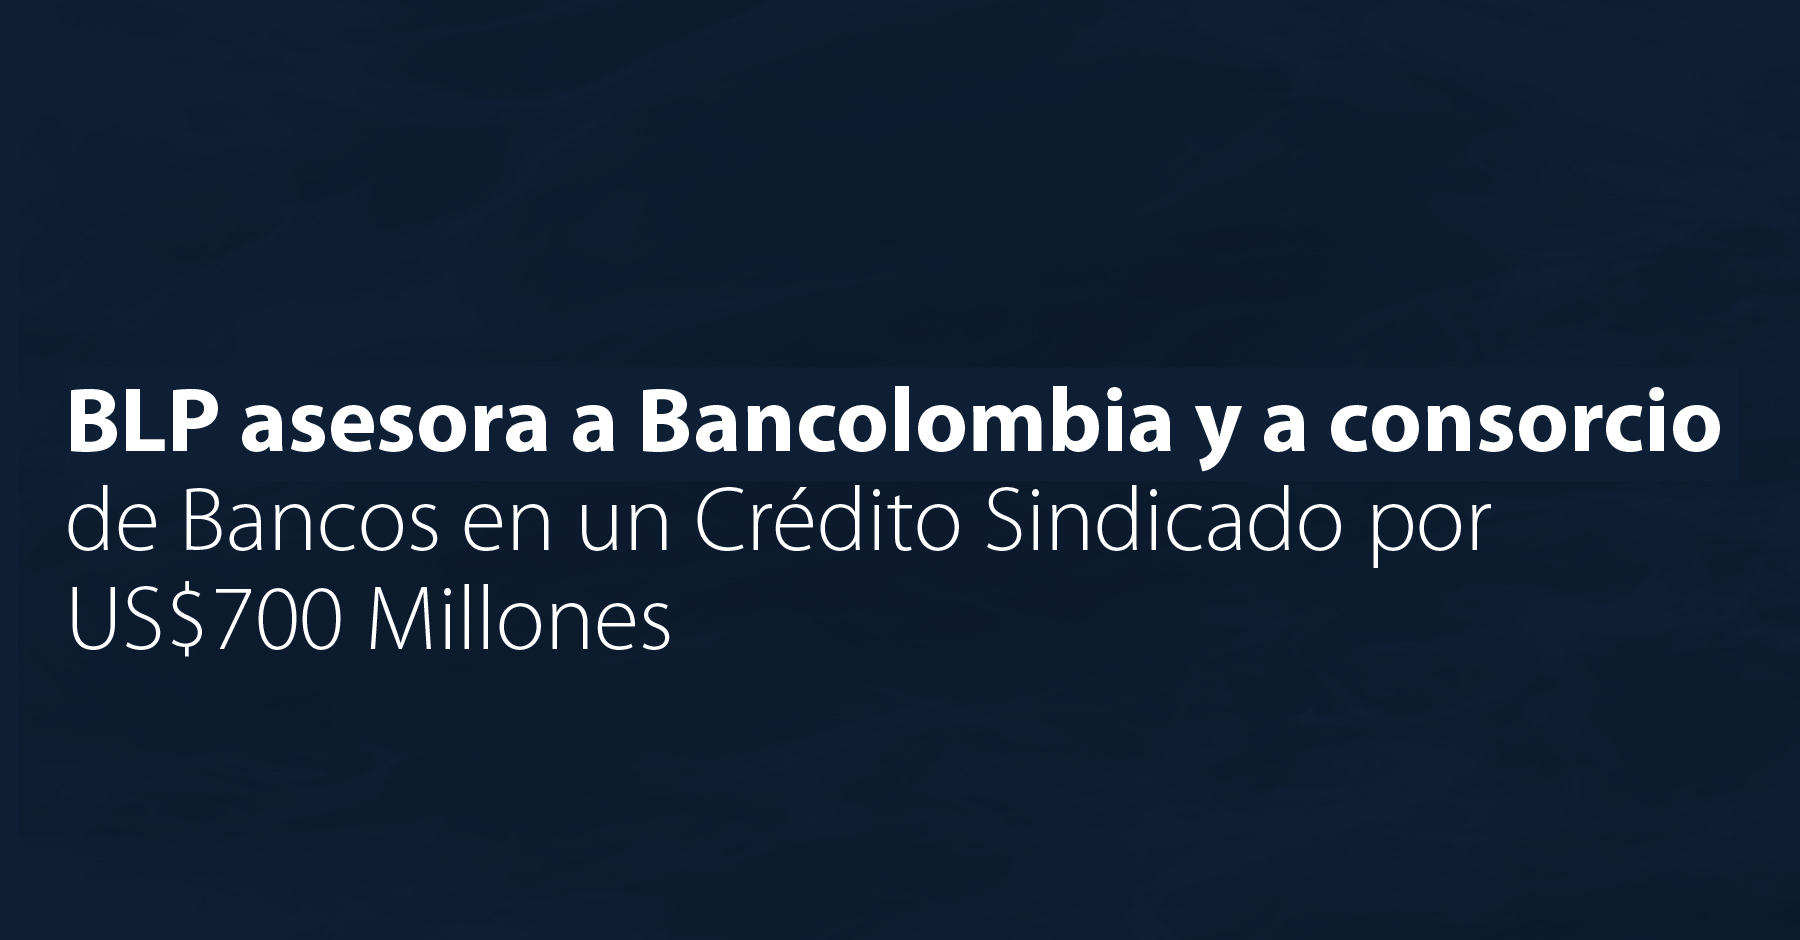 BLP asesora a Bancolombia y a consorcio de Bancos en un Crédito Sindicado por US$700 Millones